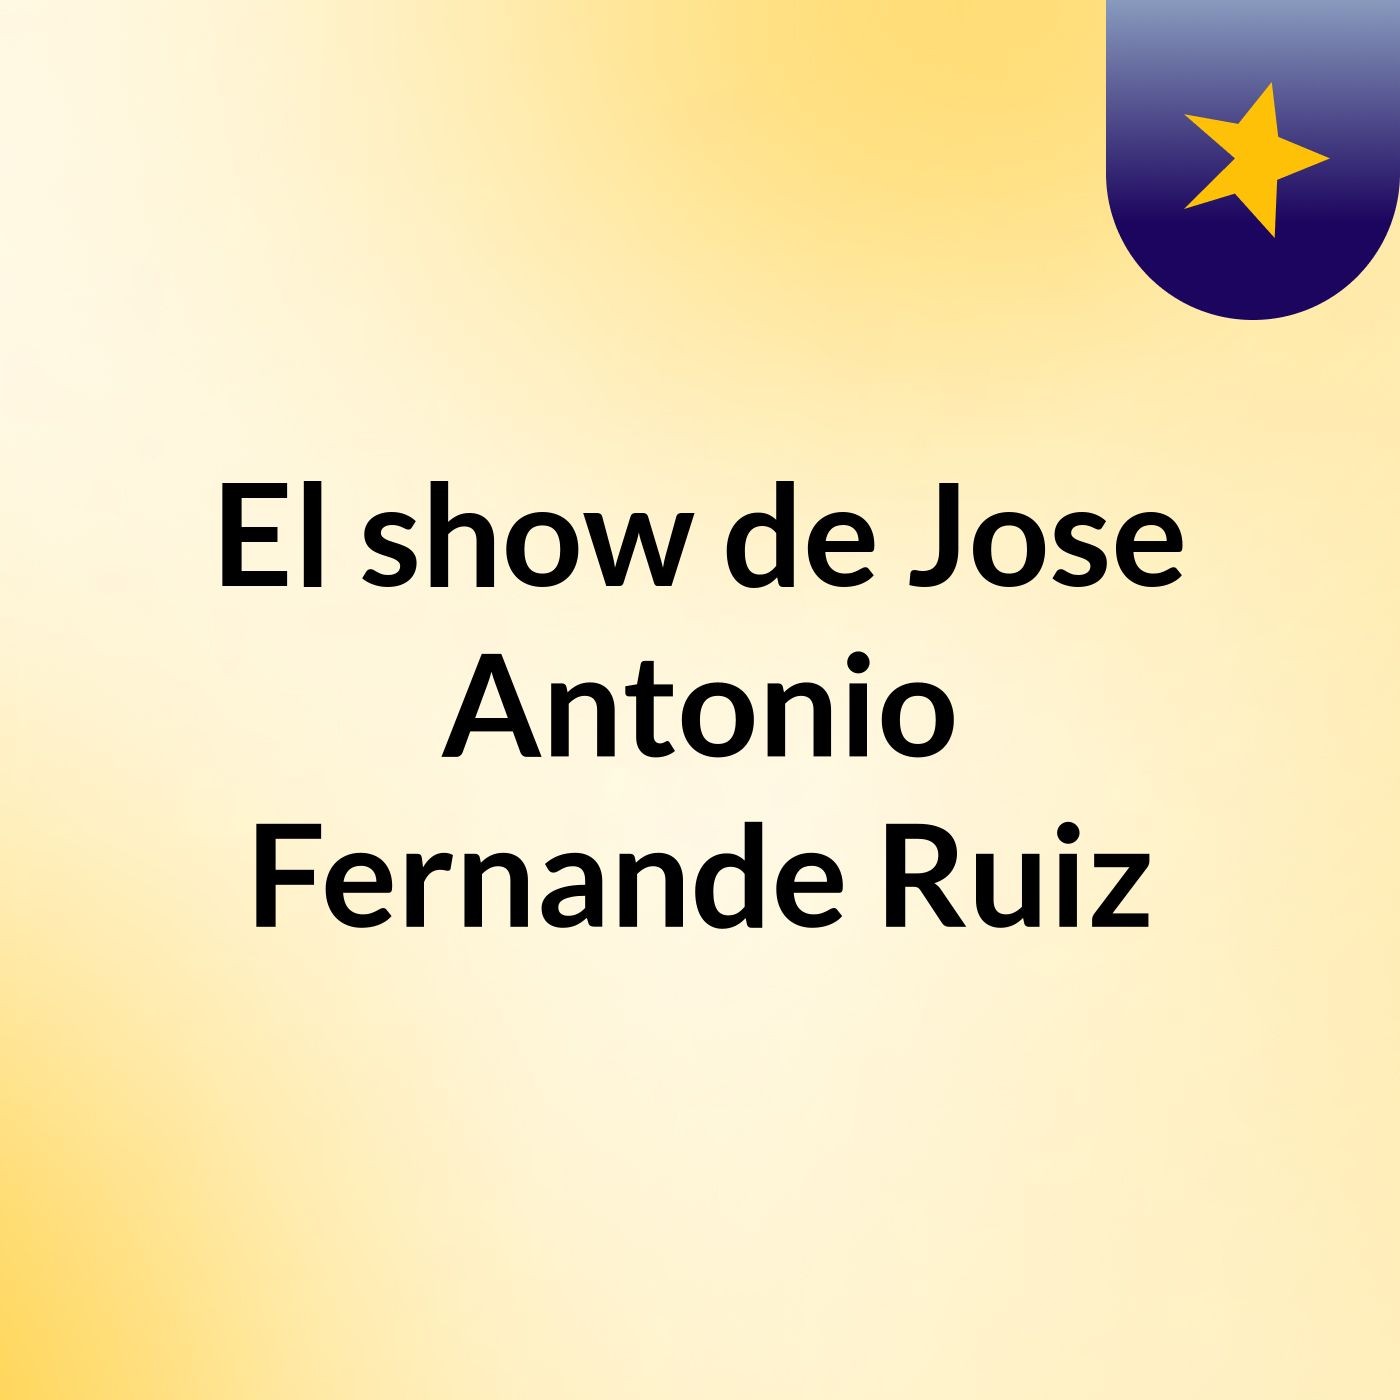 El show de Jose Antonio Fernande, Ruiz